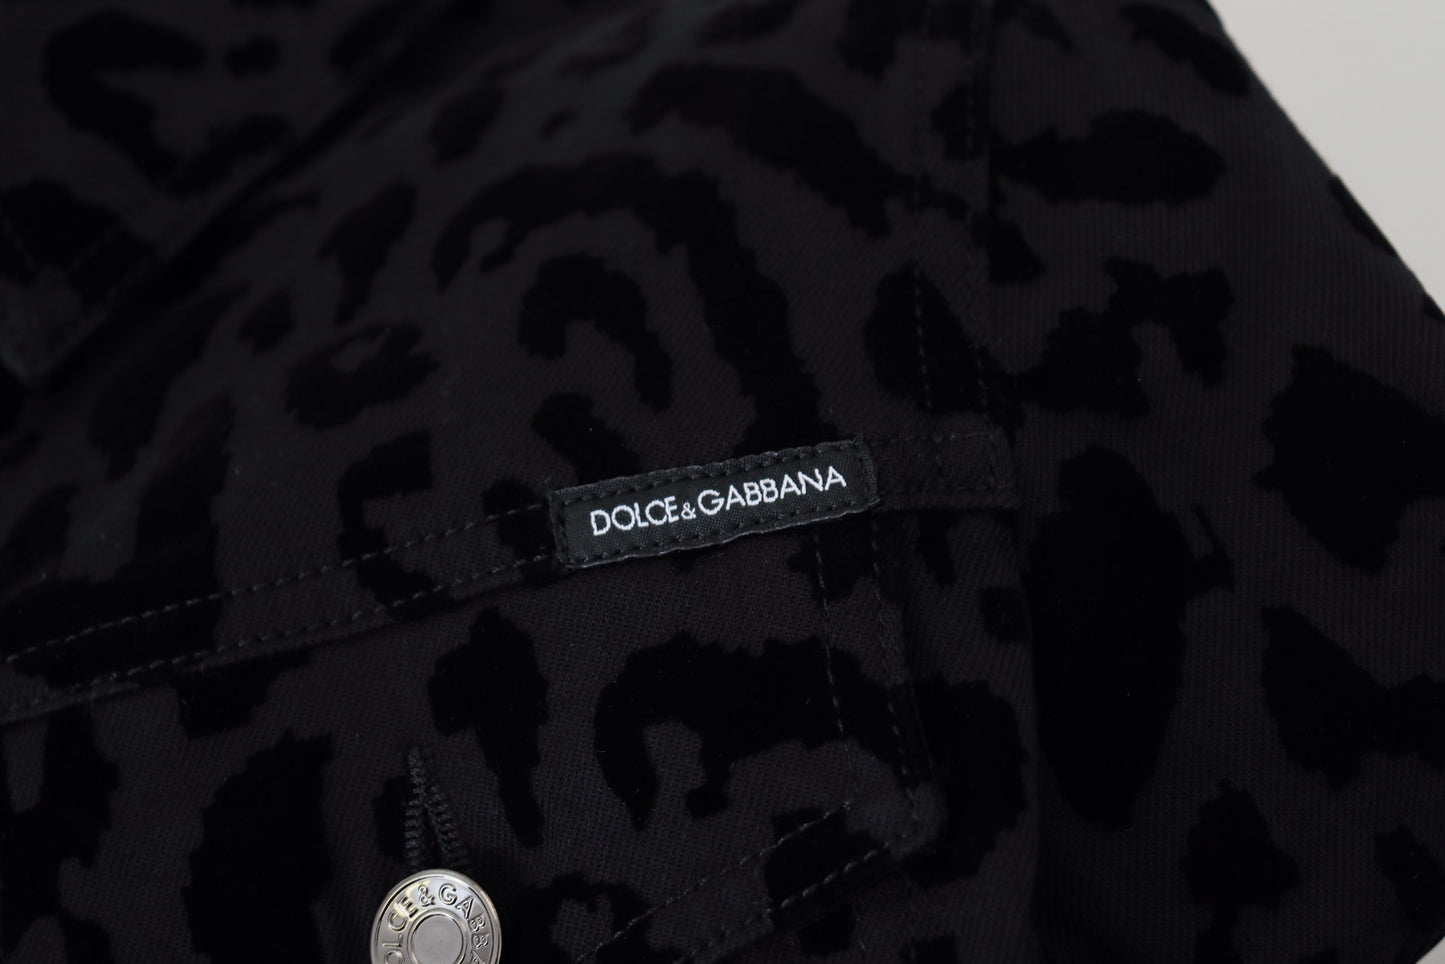 Dolce & Gabbana Chic Leopard Pattern Denim Jacket